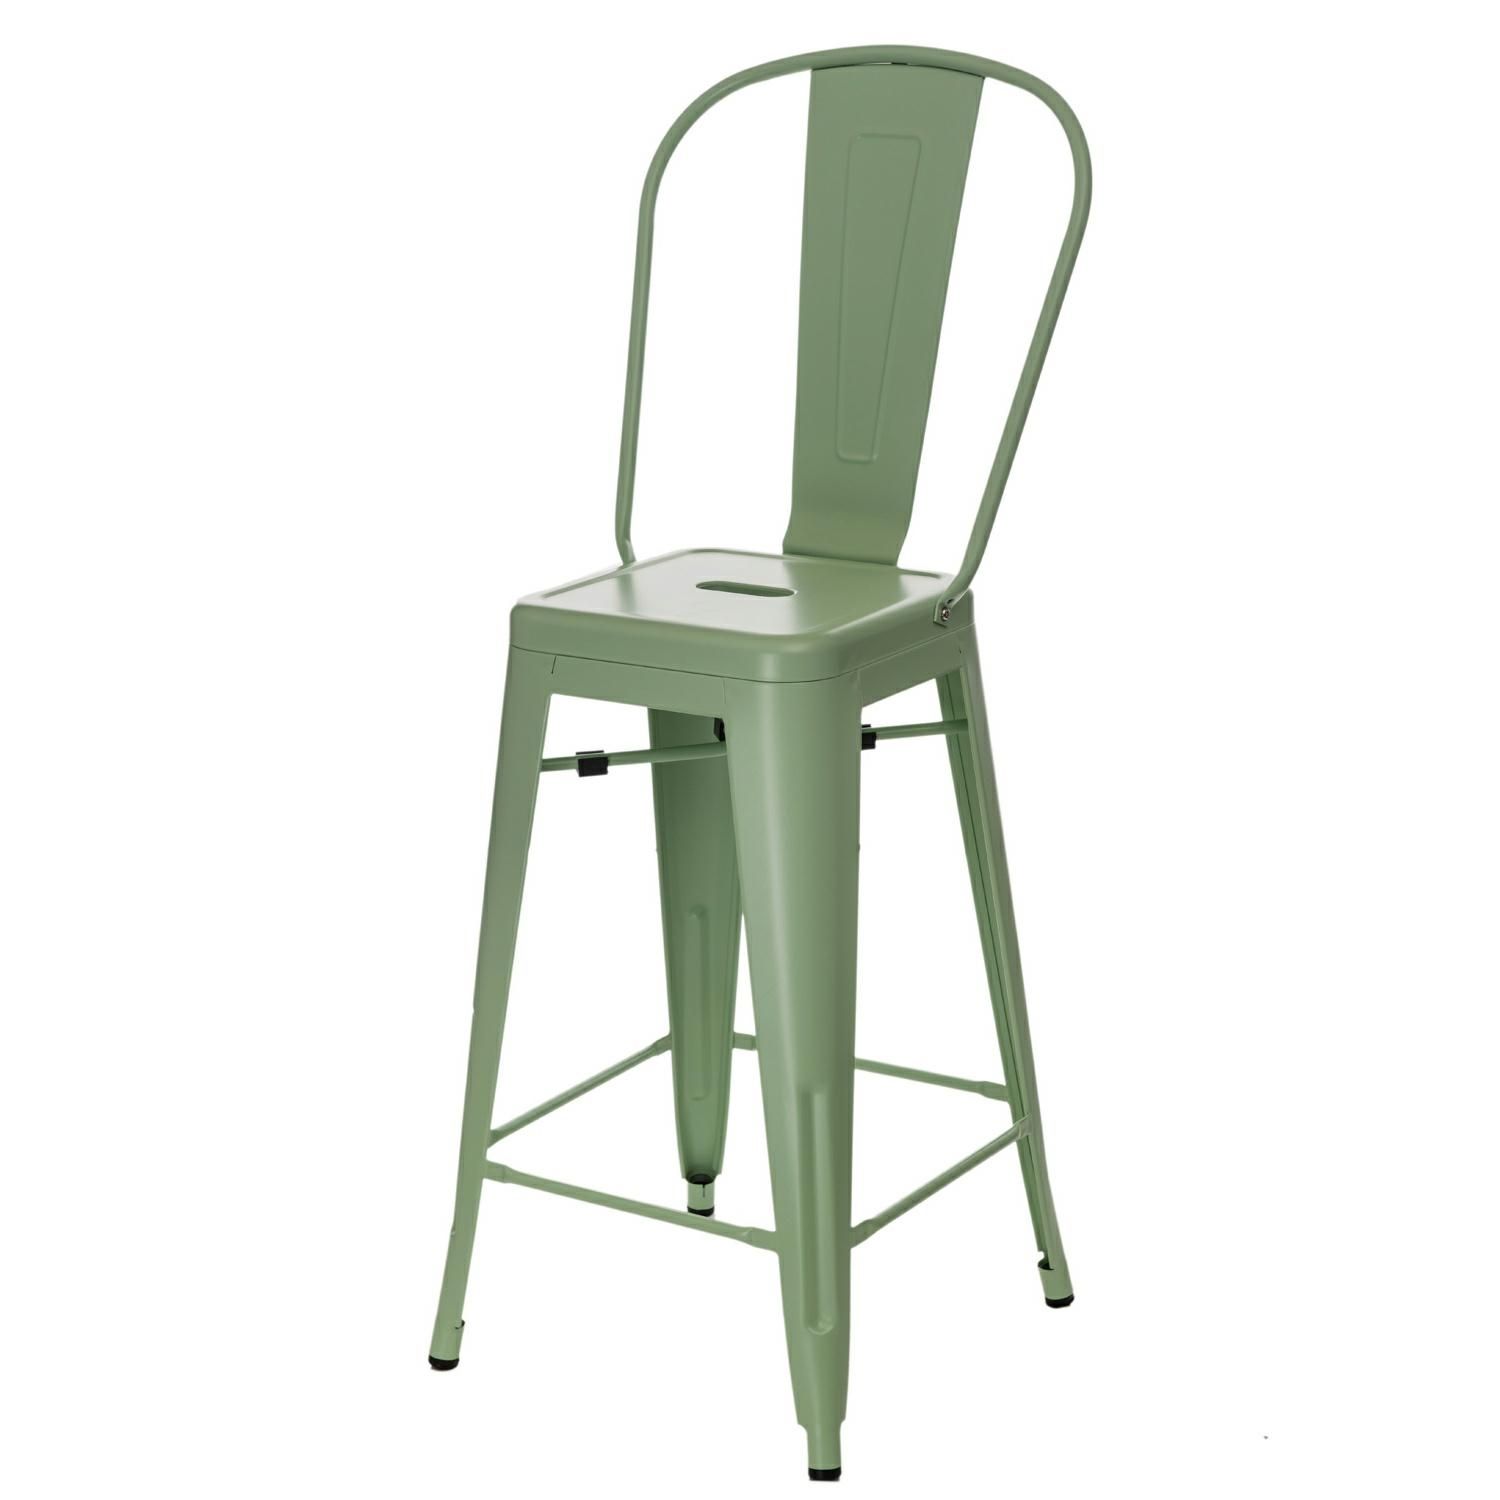  Barová židle PARIS BACK zelená inspirovaná Tolix - Mobler.cz